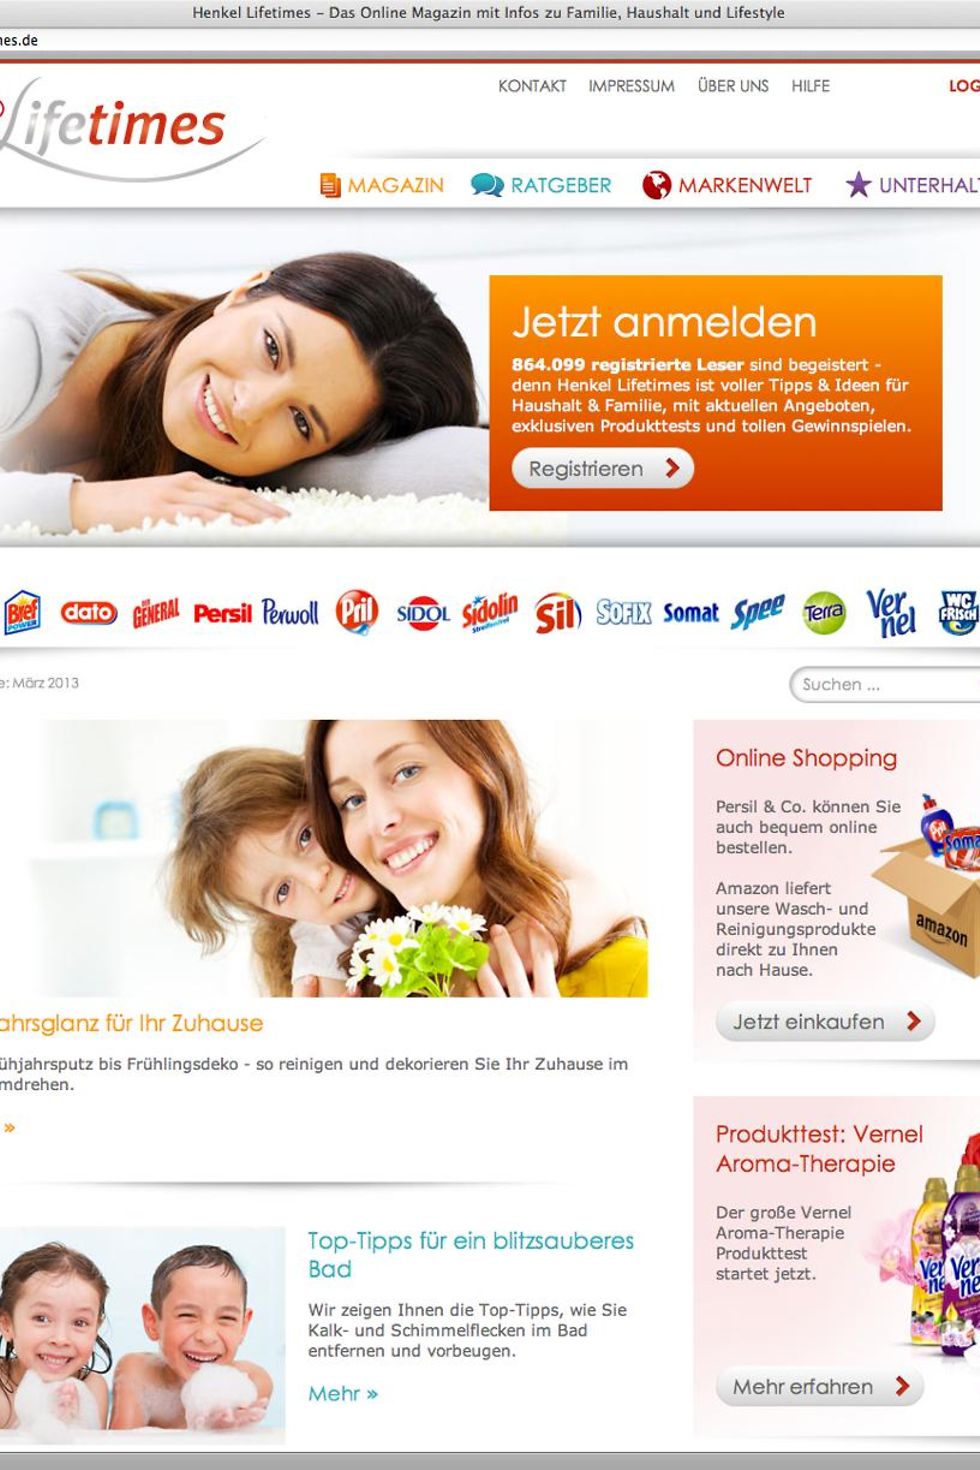 Das Online-Verbraucher-Portal Henkel Lifetimes von Henkel Laundry and Home Care gewinnt mit der Düsseldorfer Agentur menadwork kommunikation GmbH den Deutschen Preis für Onlinekommunikation 2013